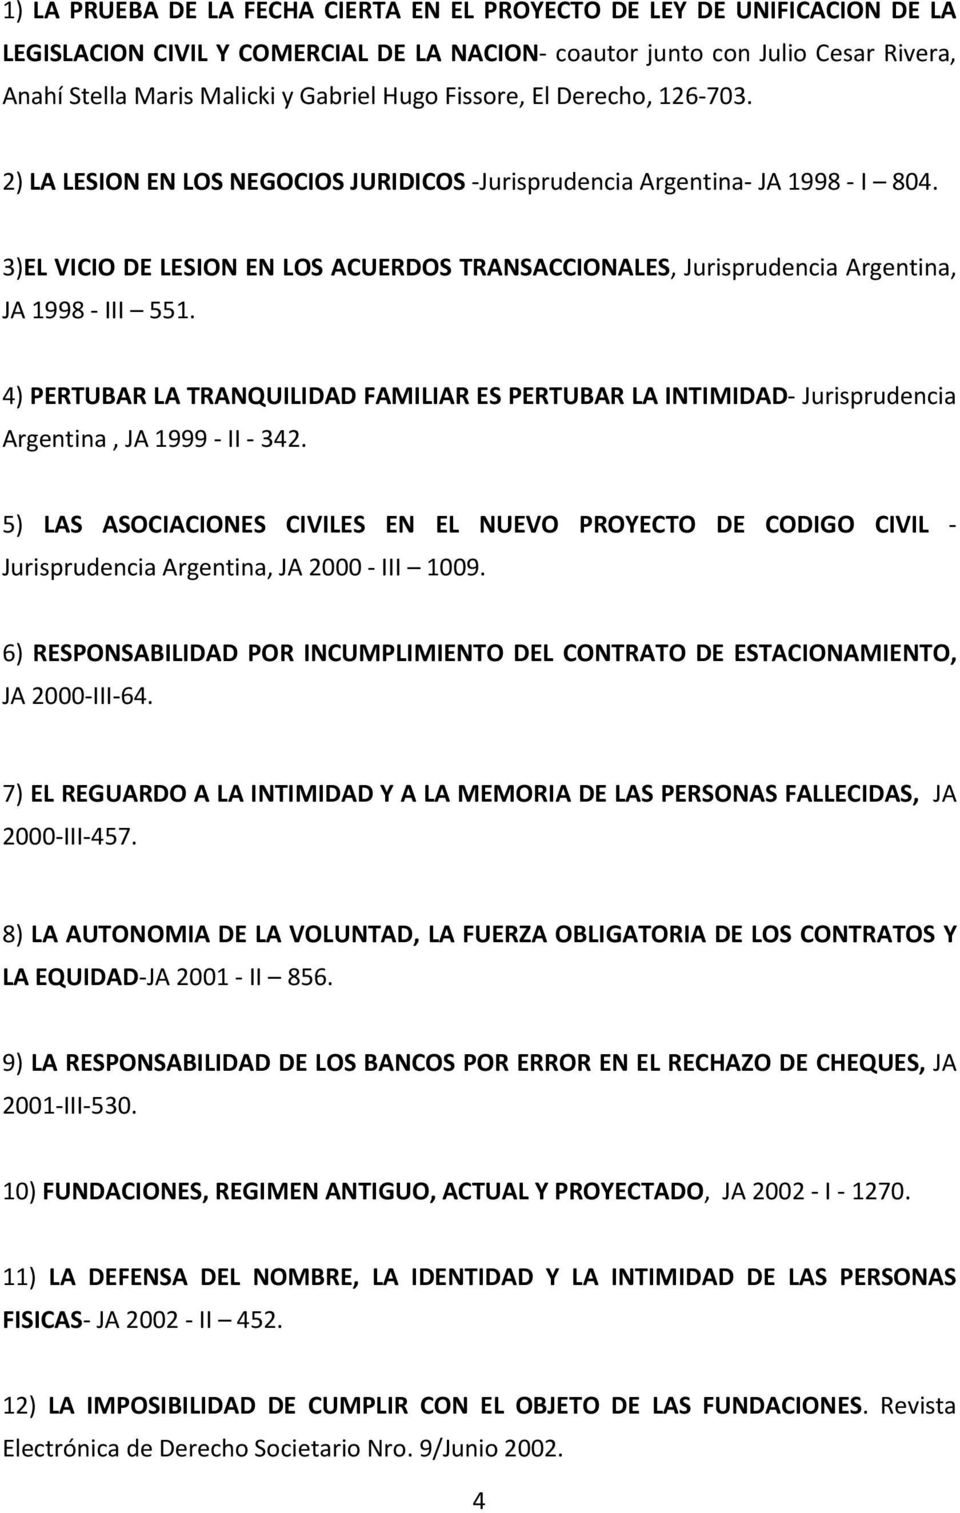 3)EL VICIO DE LESION EN LOS ACUERDOS TRANSACCIONALES, Jurisprudencia Argentina, JA 1998 III 551. 4) PERTUBAR LA TRANQUILIDAD FAMILIAR ES PERTUBAR LA INTIMIDAD Jurisprudencia Argentina, JA 1999 II 342.